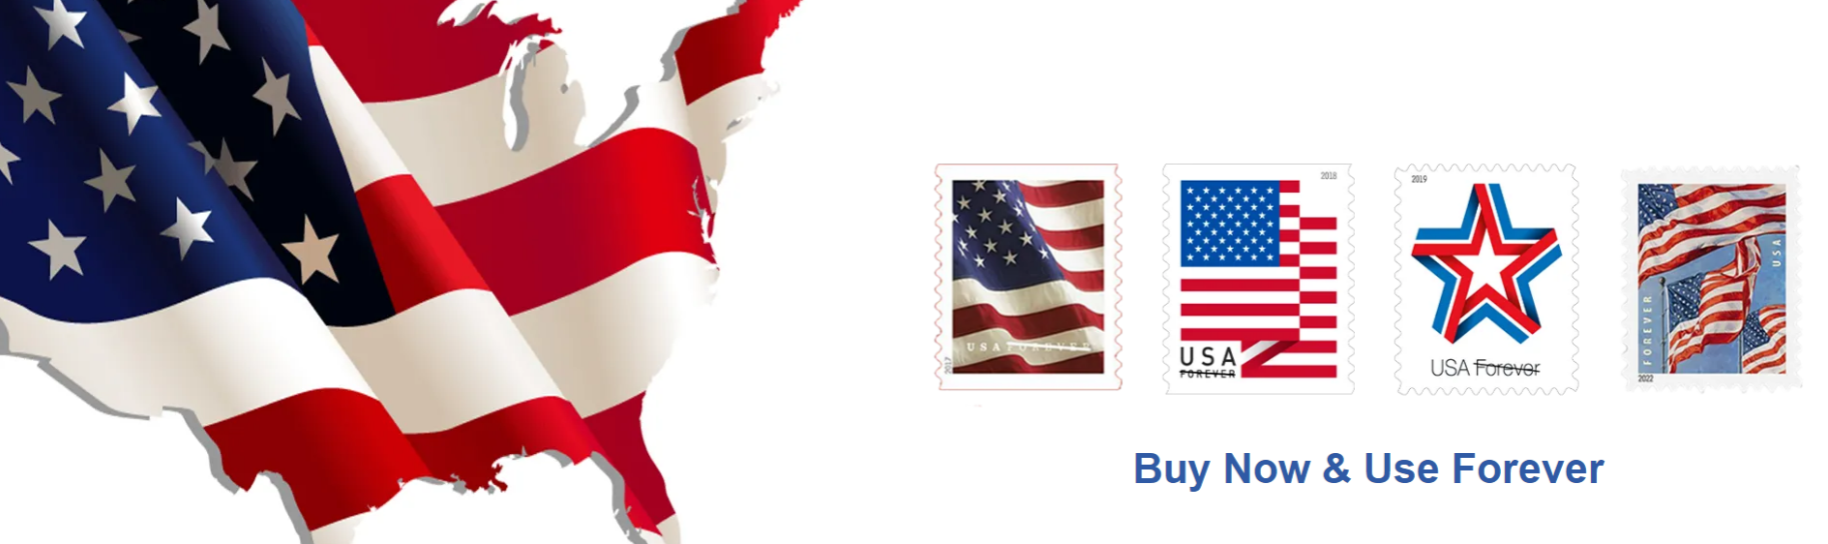 $27.99 / 100 Stamps U.S. Flag 2019 Booklet Forever USPS Postage